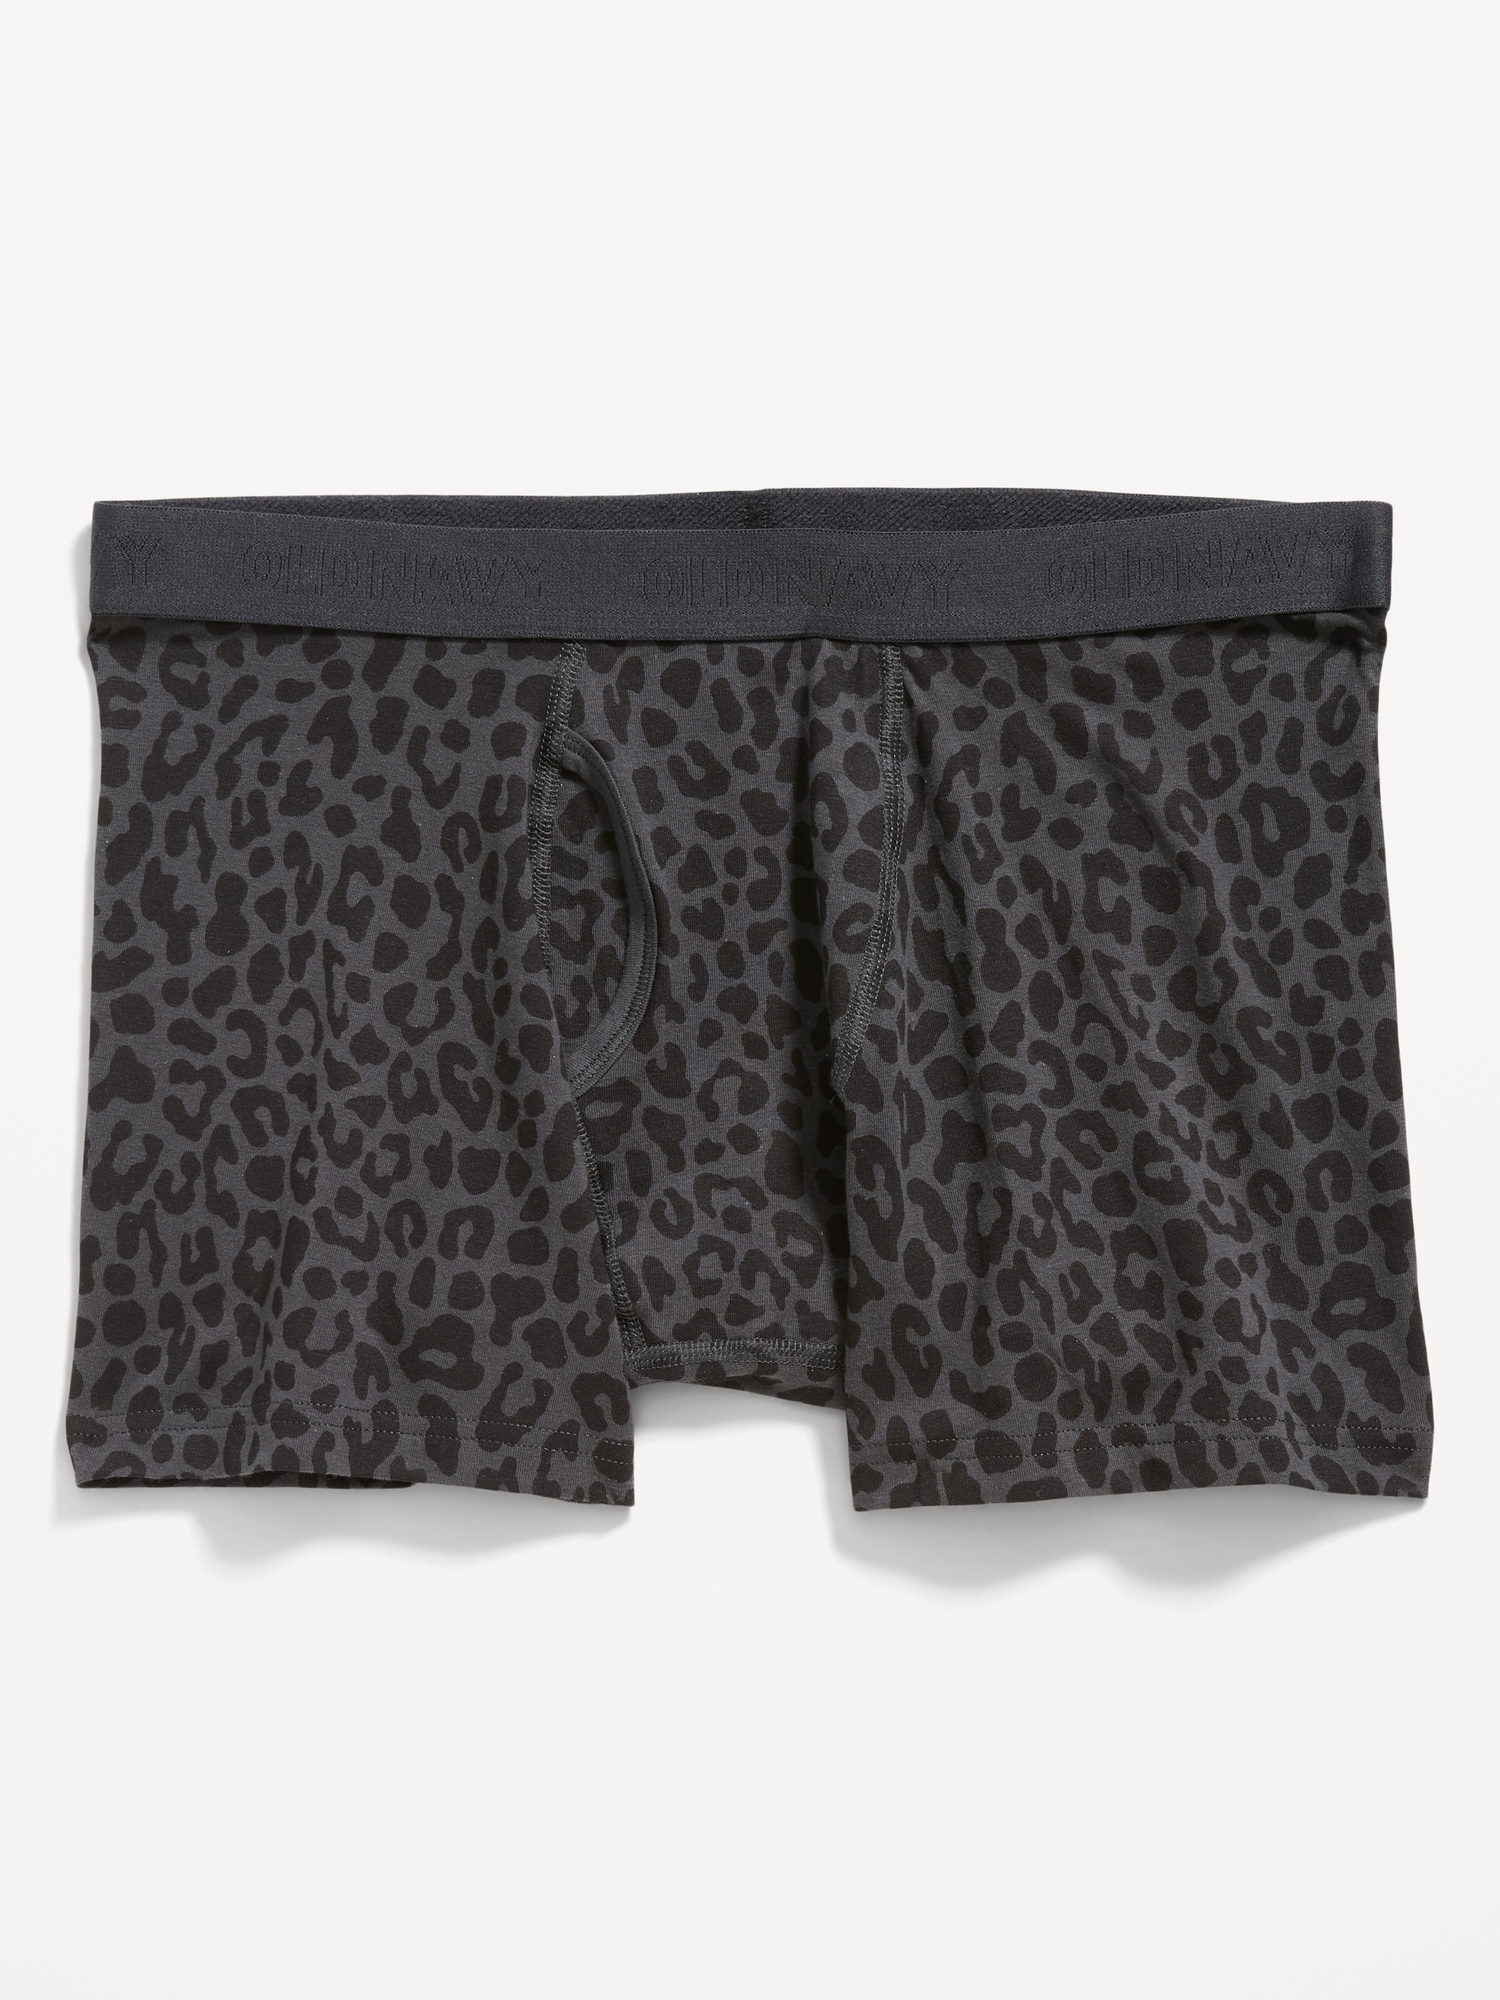 Soft-Washed Built-In Flex Printed Boxer-Briefs Underwear for Men -- 4.5 ...